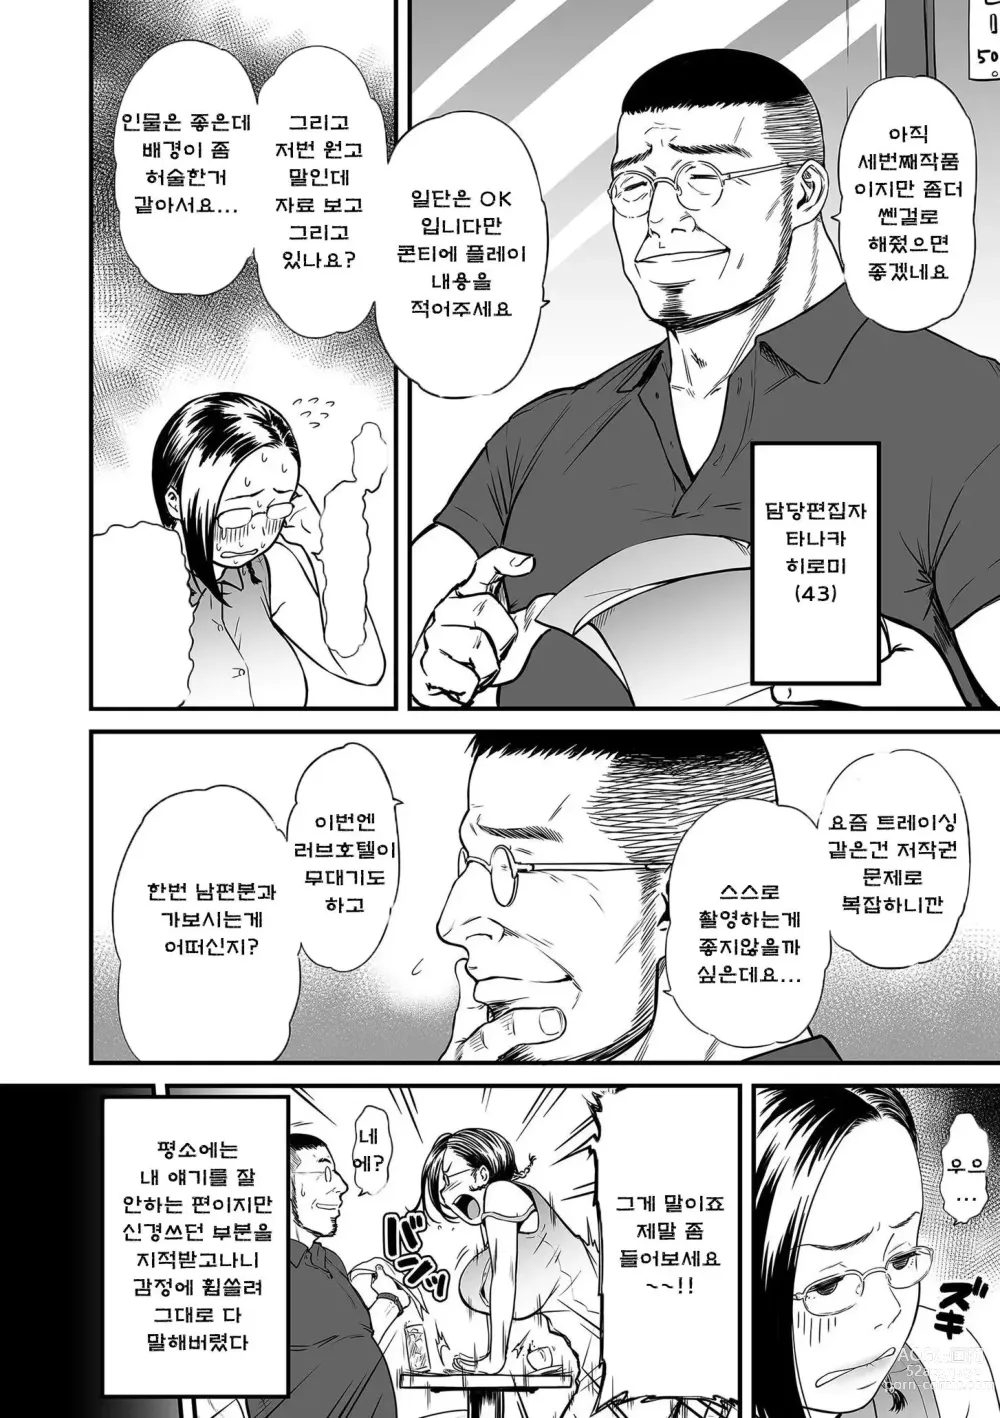 Page 18 of manga 여자 에로 만화가가 음란하다니 환상이지 않은가요